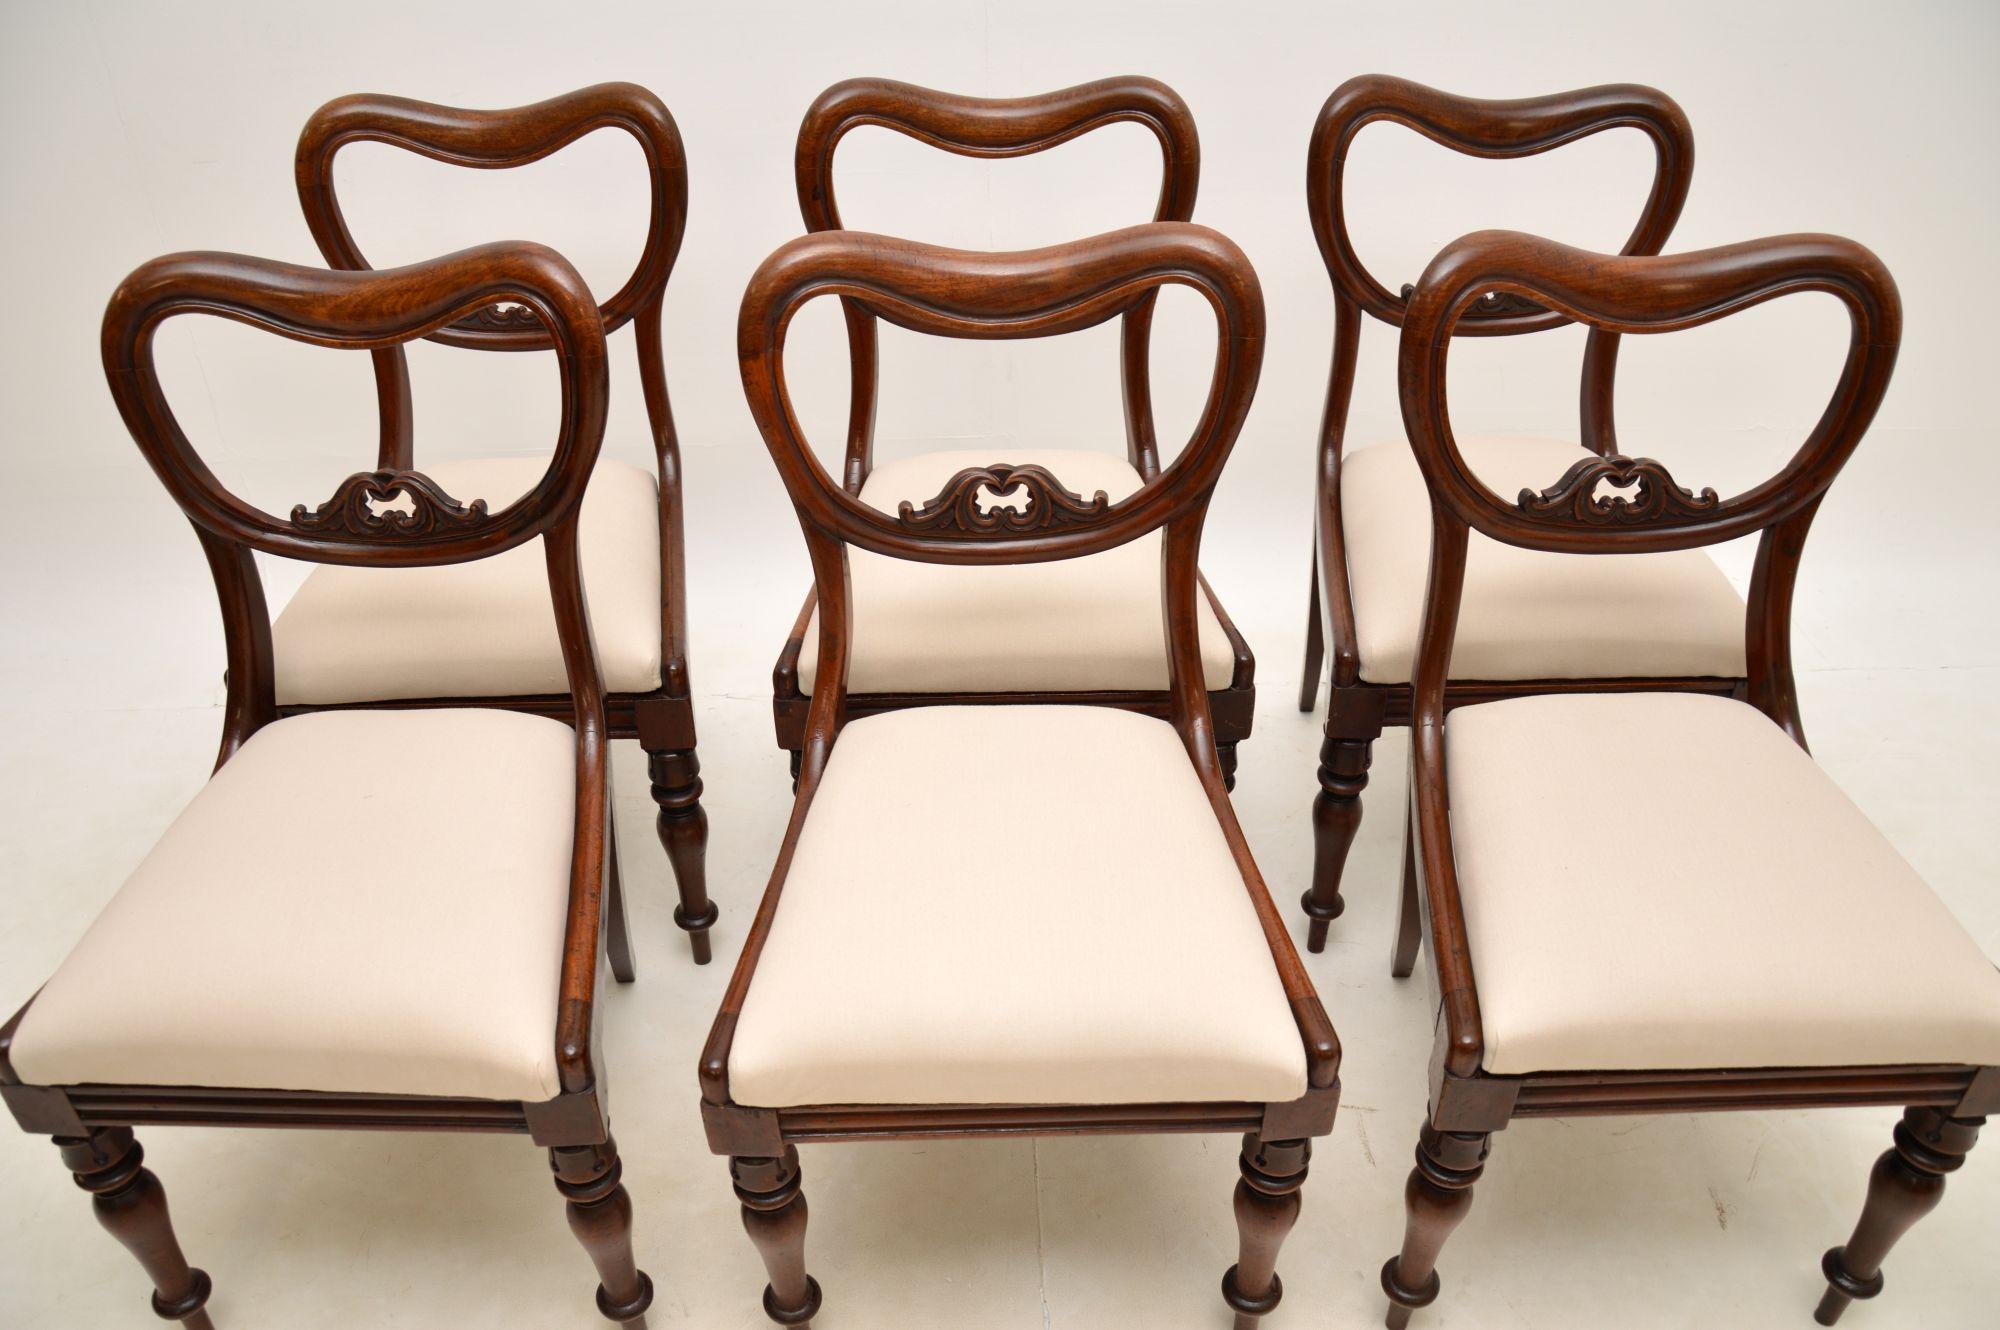 Un superbe ensemble de six chaises de salle à manger d'époque William IV. Ils ont été fabriqués en Angleterre et datent des années 1830-1840.

Ils sont d'une superbe qualité, avec des dossiers 